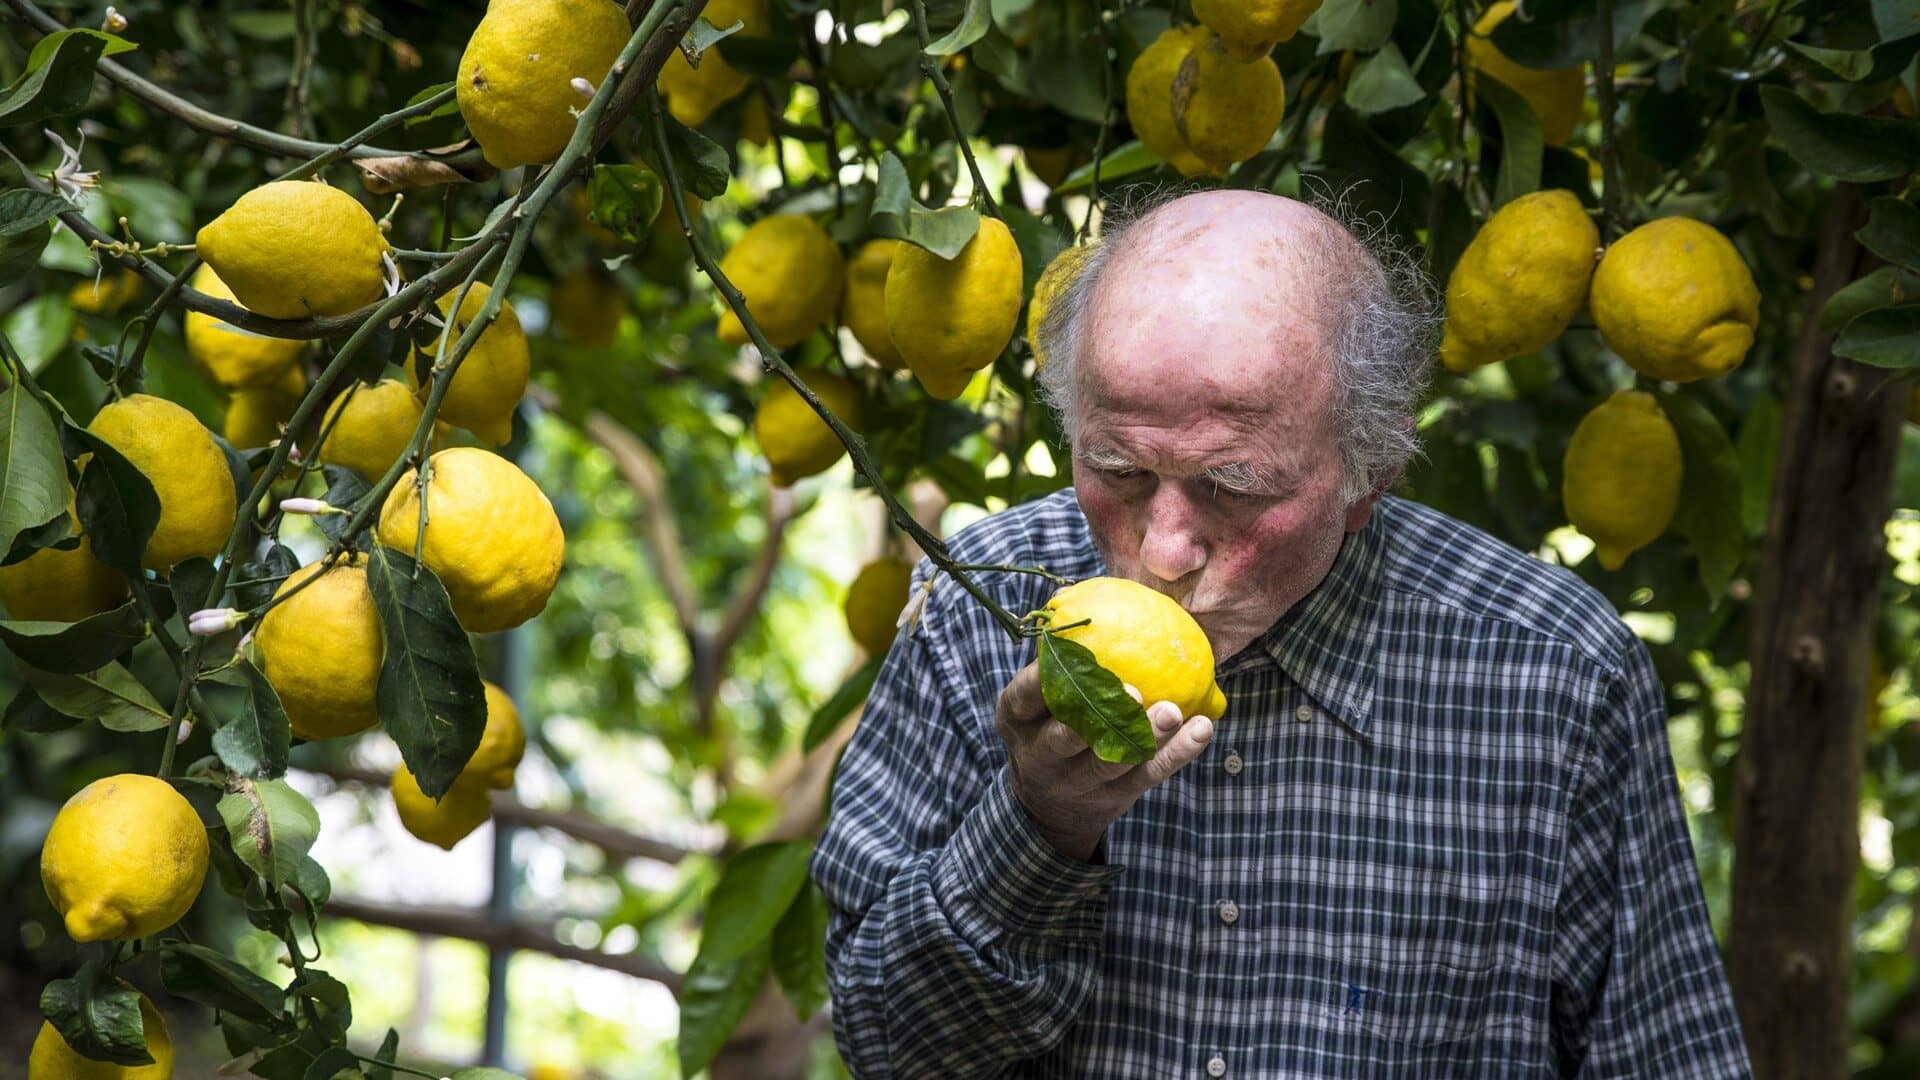 Image: Aceto, a lemon farmer on the Amalfi Coast kissing a lemon!